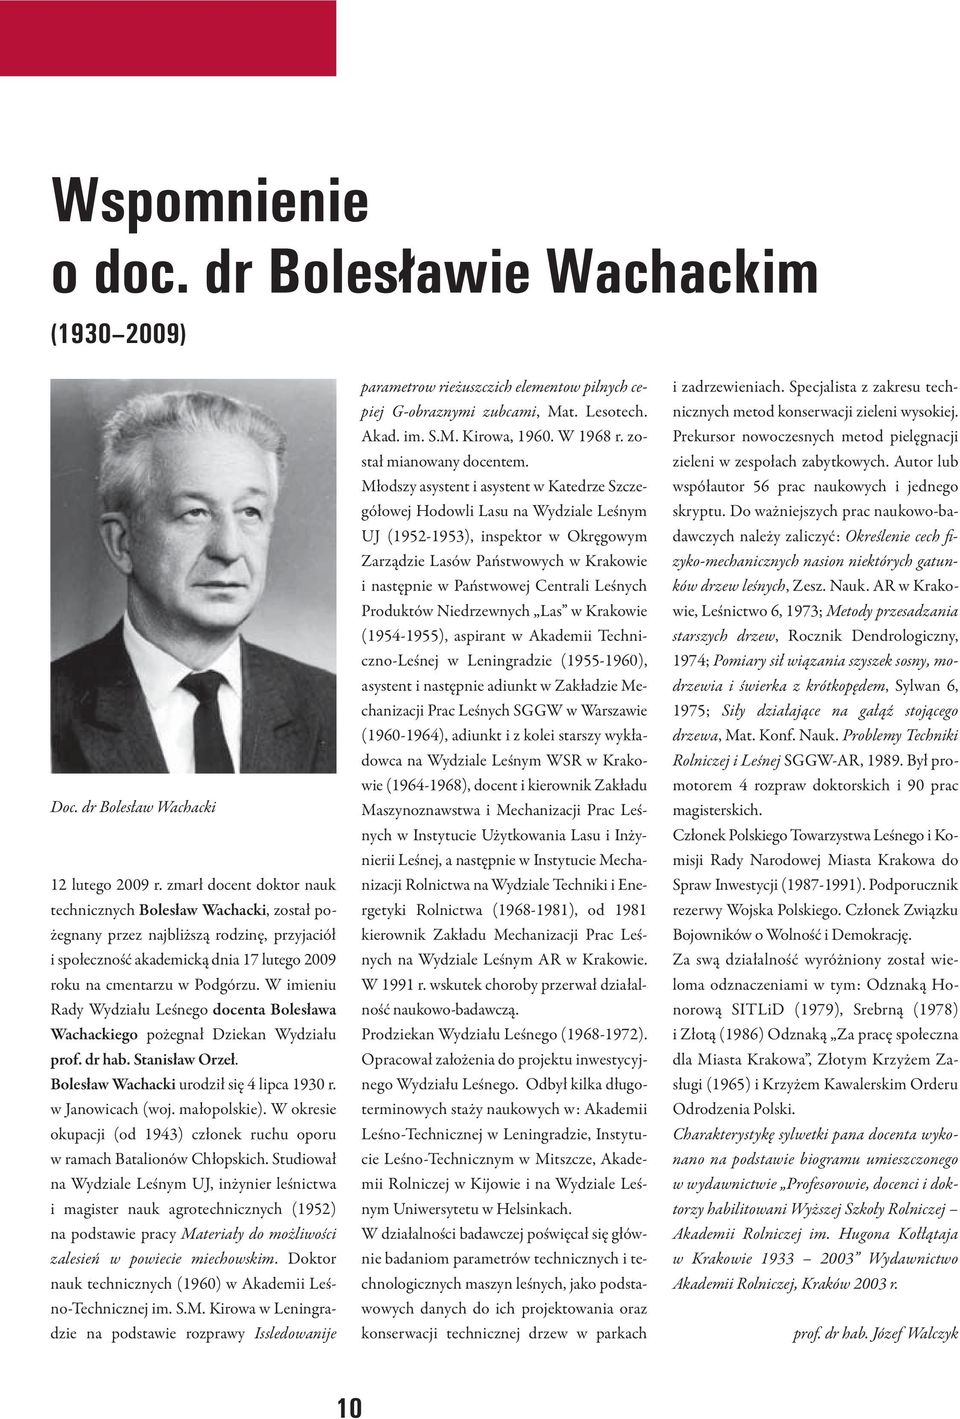 W imieniu Rady Wydziału Leśnego docenta Bolesława Wachackiego pożegnał Dziekan Wydziału prof. dr hab. Stanisław Orzeł. Bolesław Wachacki urodził się 4 lipca 1930 r. w Janowicach (woj. małopolskie).